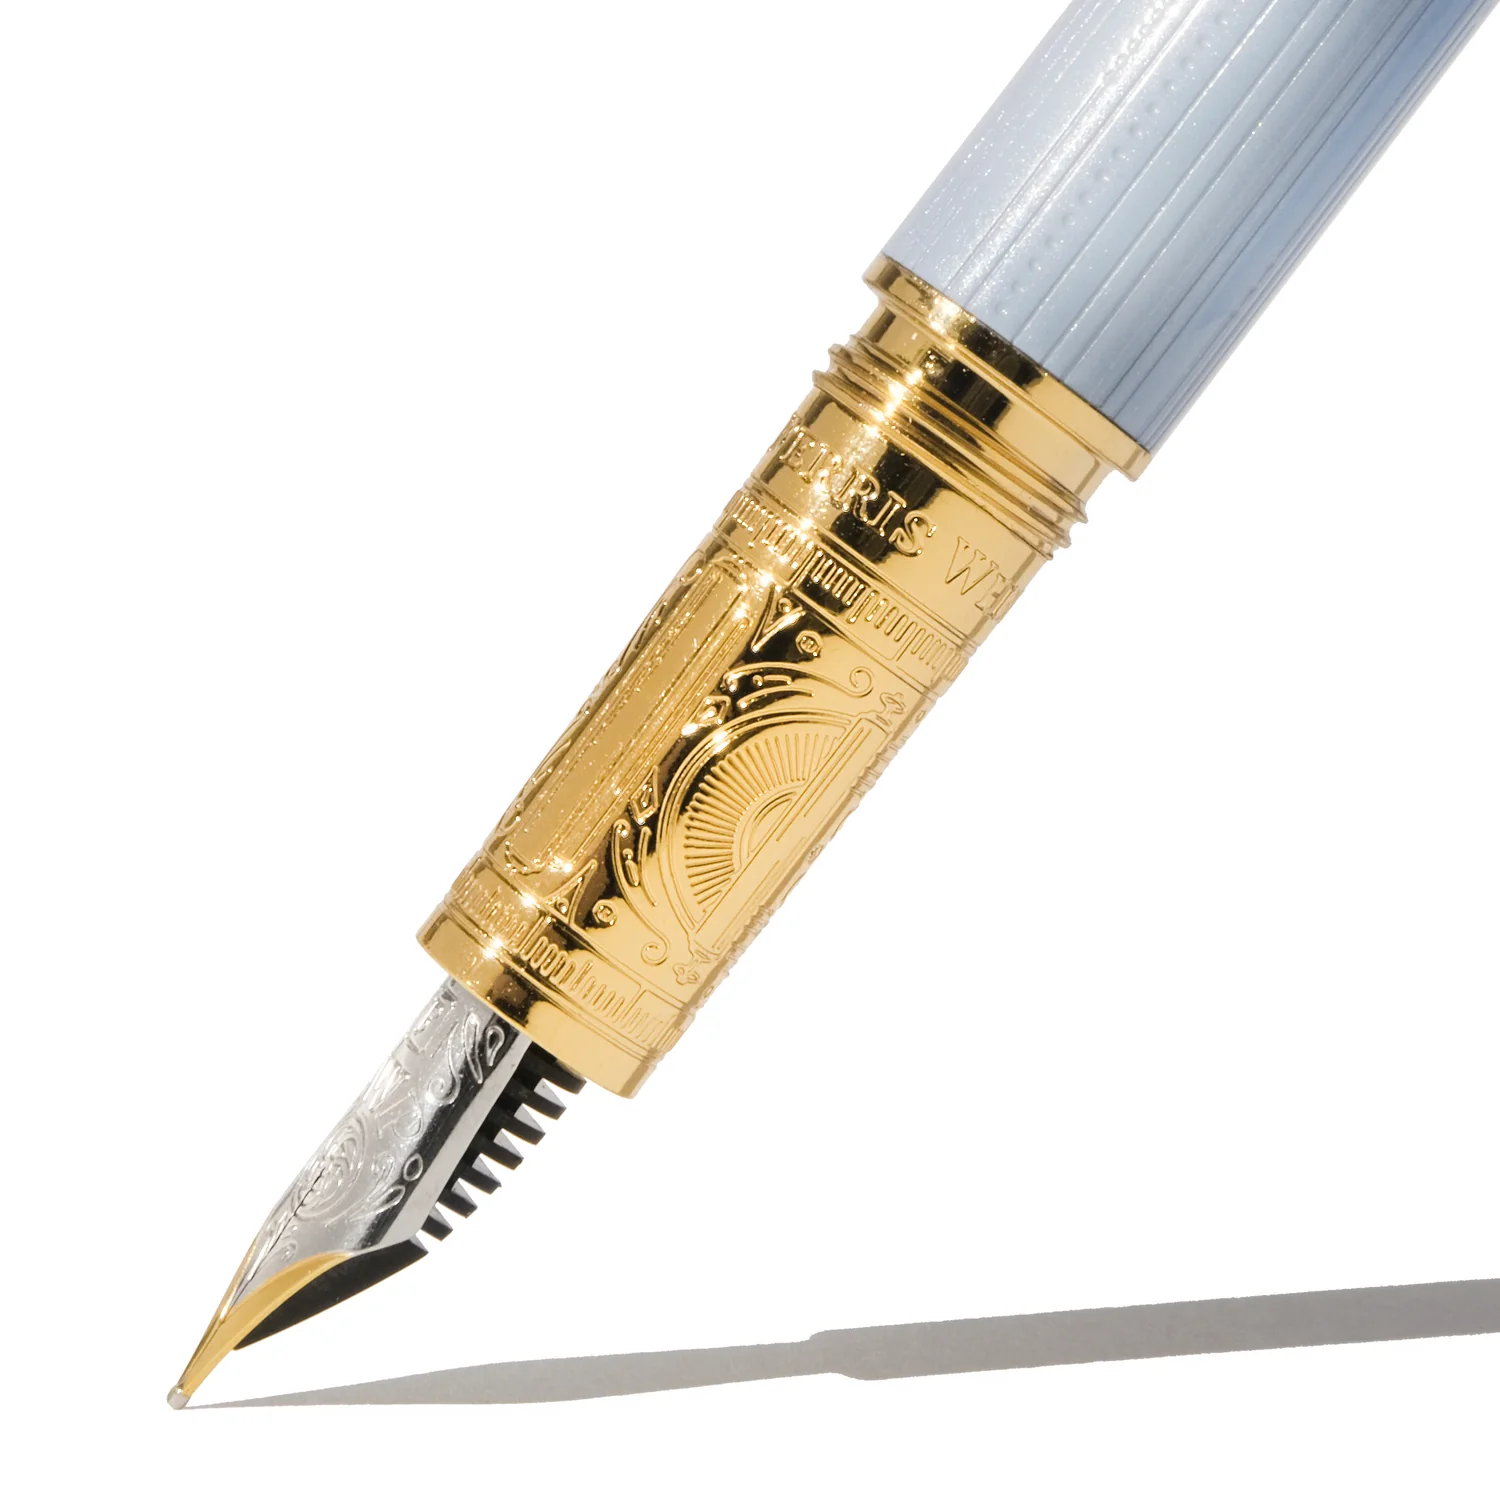 Penna stilografica Bijou - Non ti scordar di me - Media